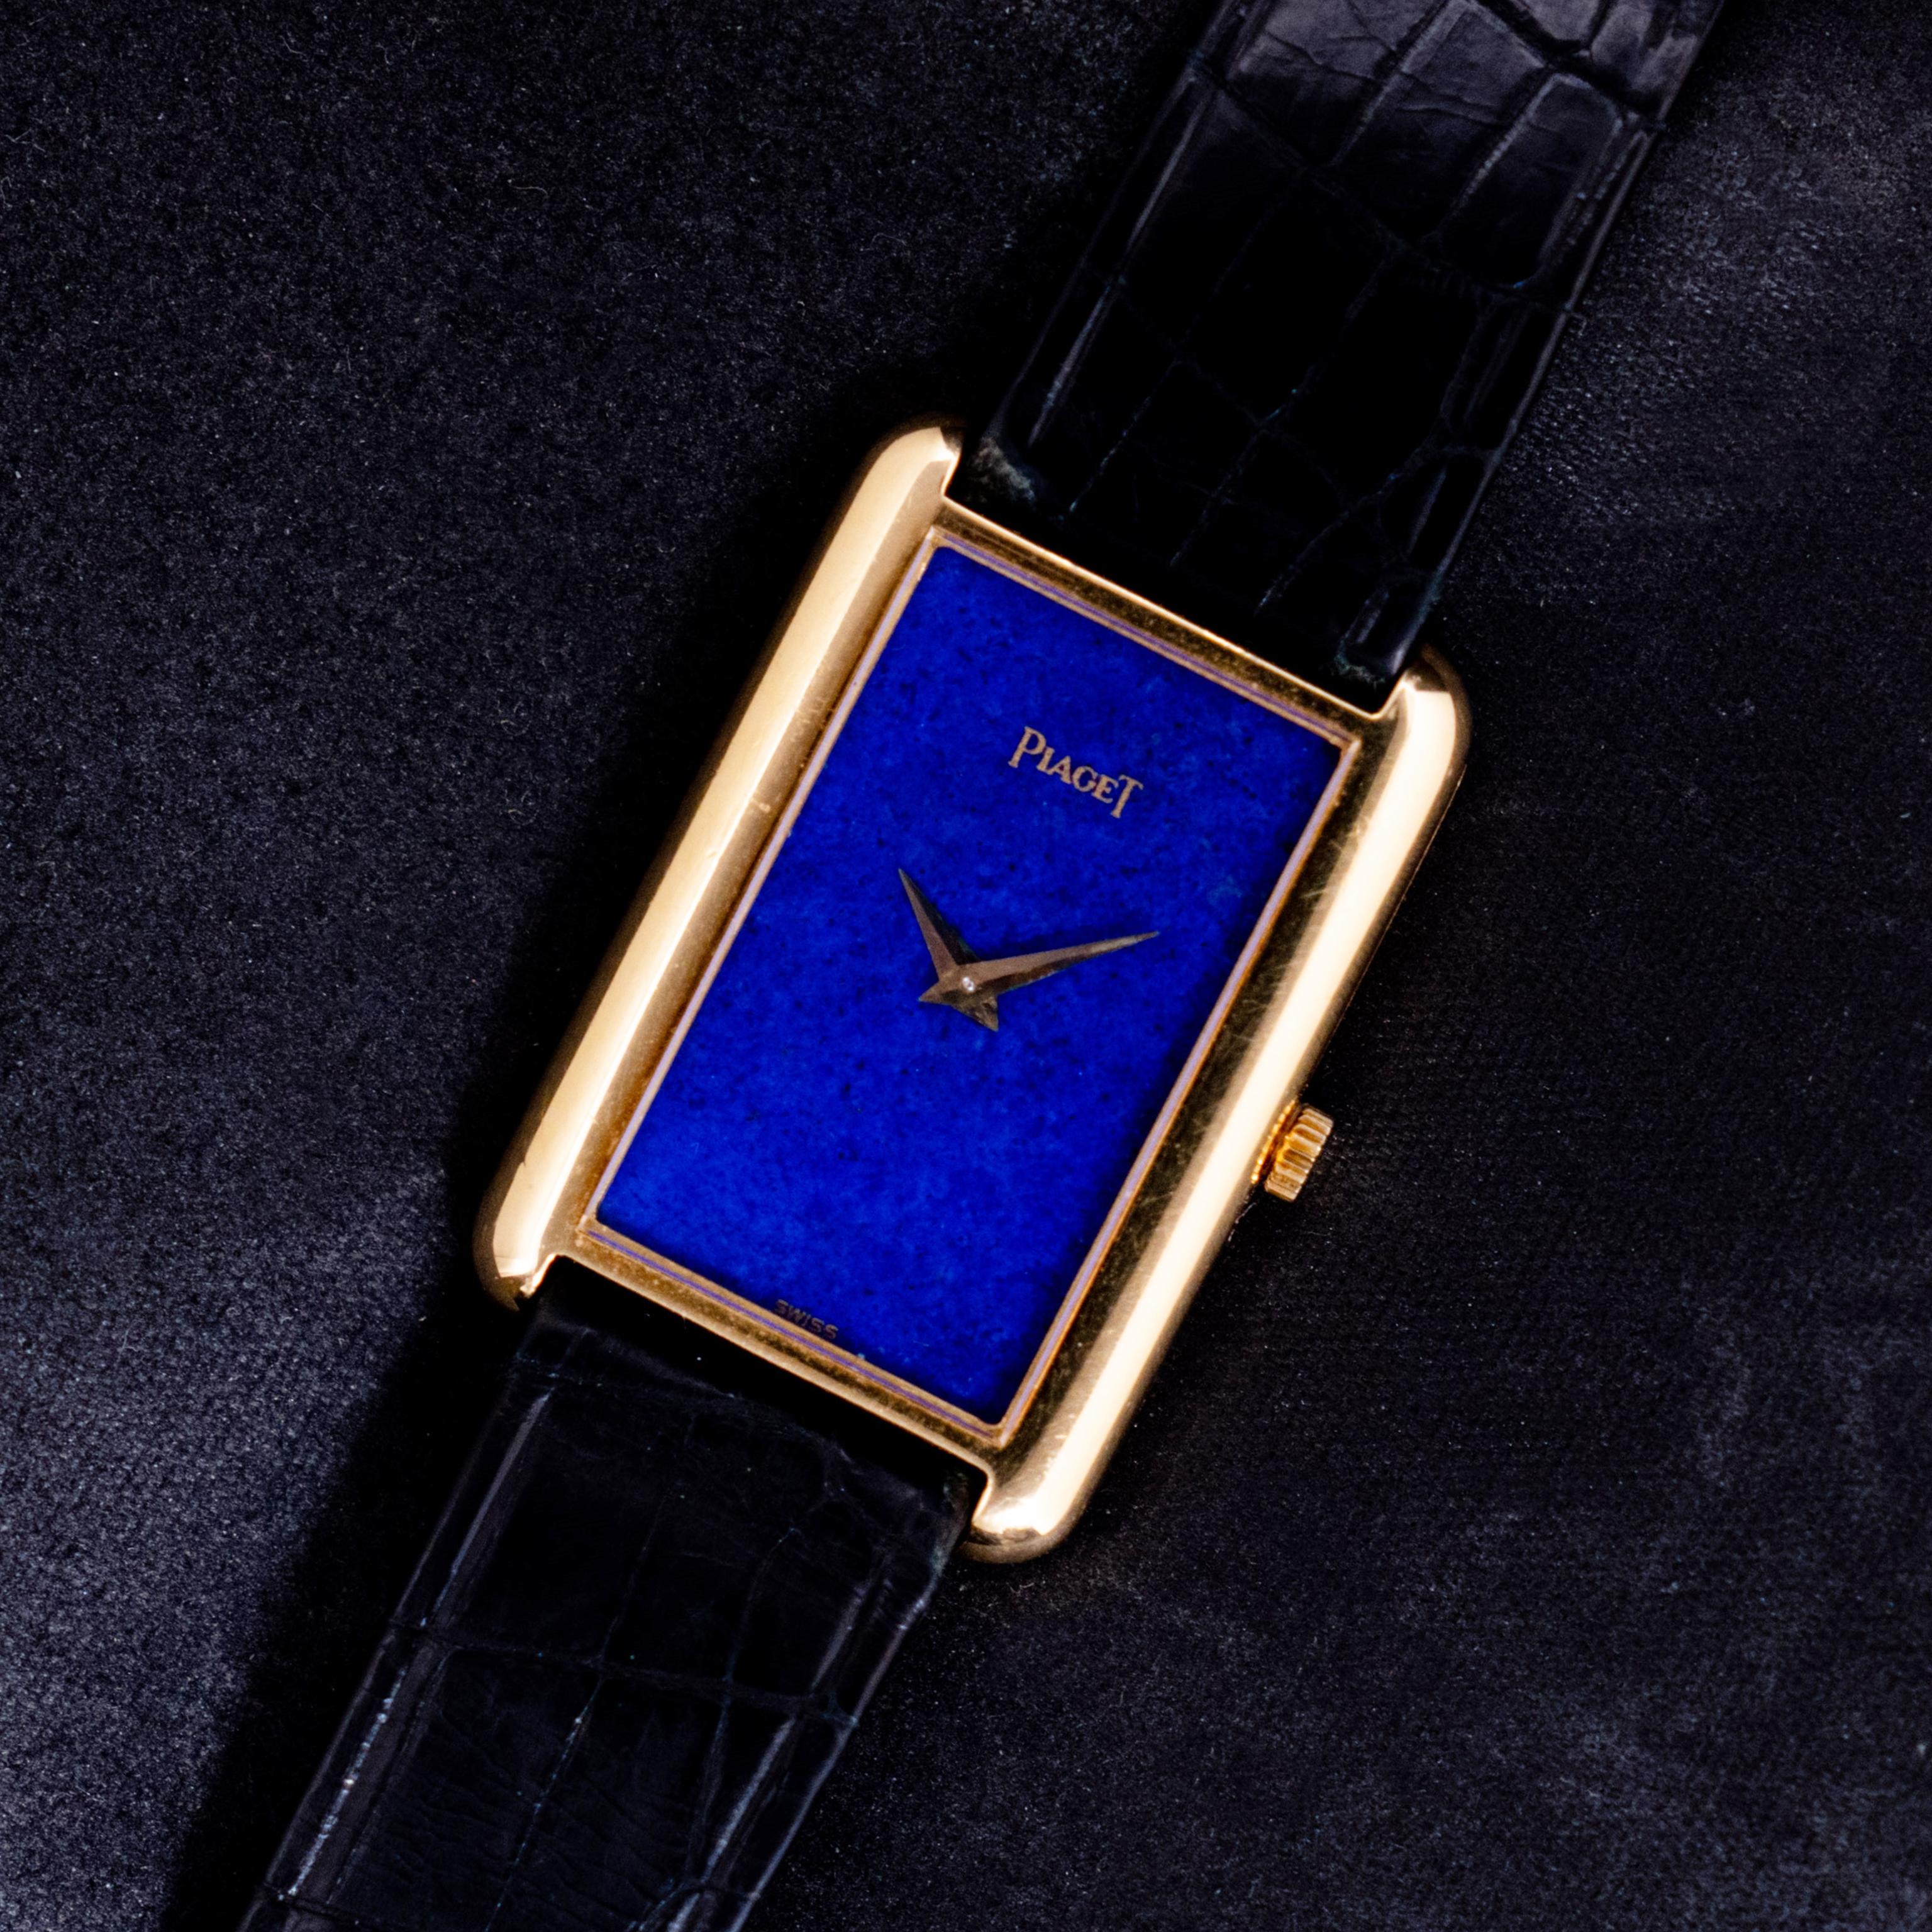 Marque : Piaget
Année : 1970
Numéro de série : 6-79-xxx
Référence : C03955

Dans les années 1960, Piaget possède une arme secrète qui lui permet de créer des montres habillées minces pour les hommes et d'introduire une nouvelle esthétique pour les